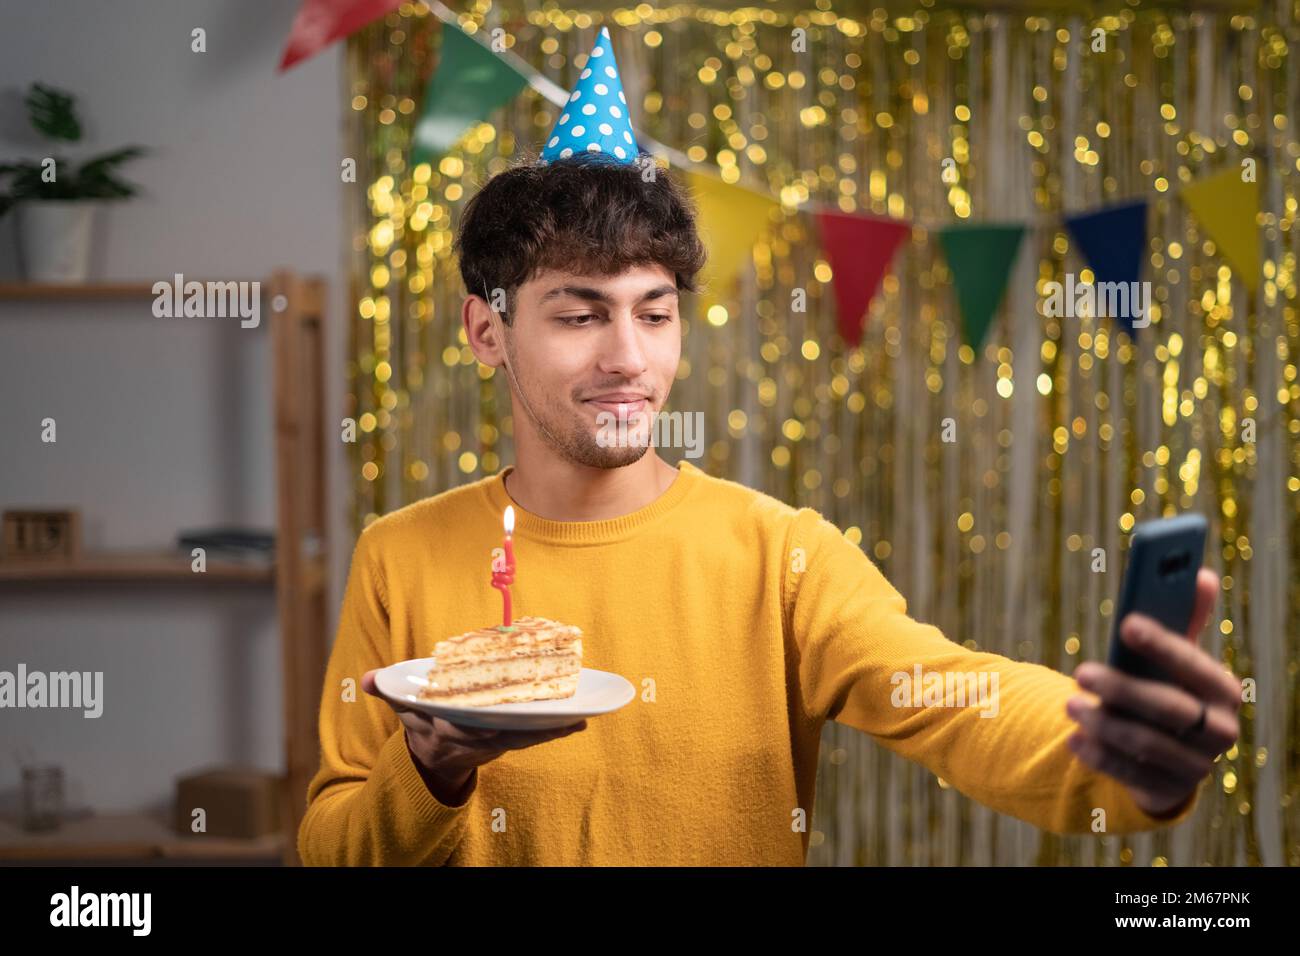 Ein arabischer Geburtstagskind-Blogger, der ein Video mit Kuchen aufnimmt, Geburtstagsselfie zu Hause Stockfoto